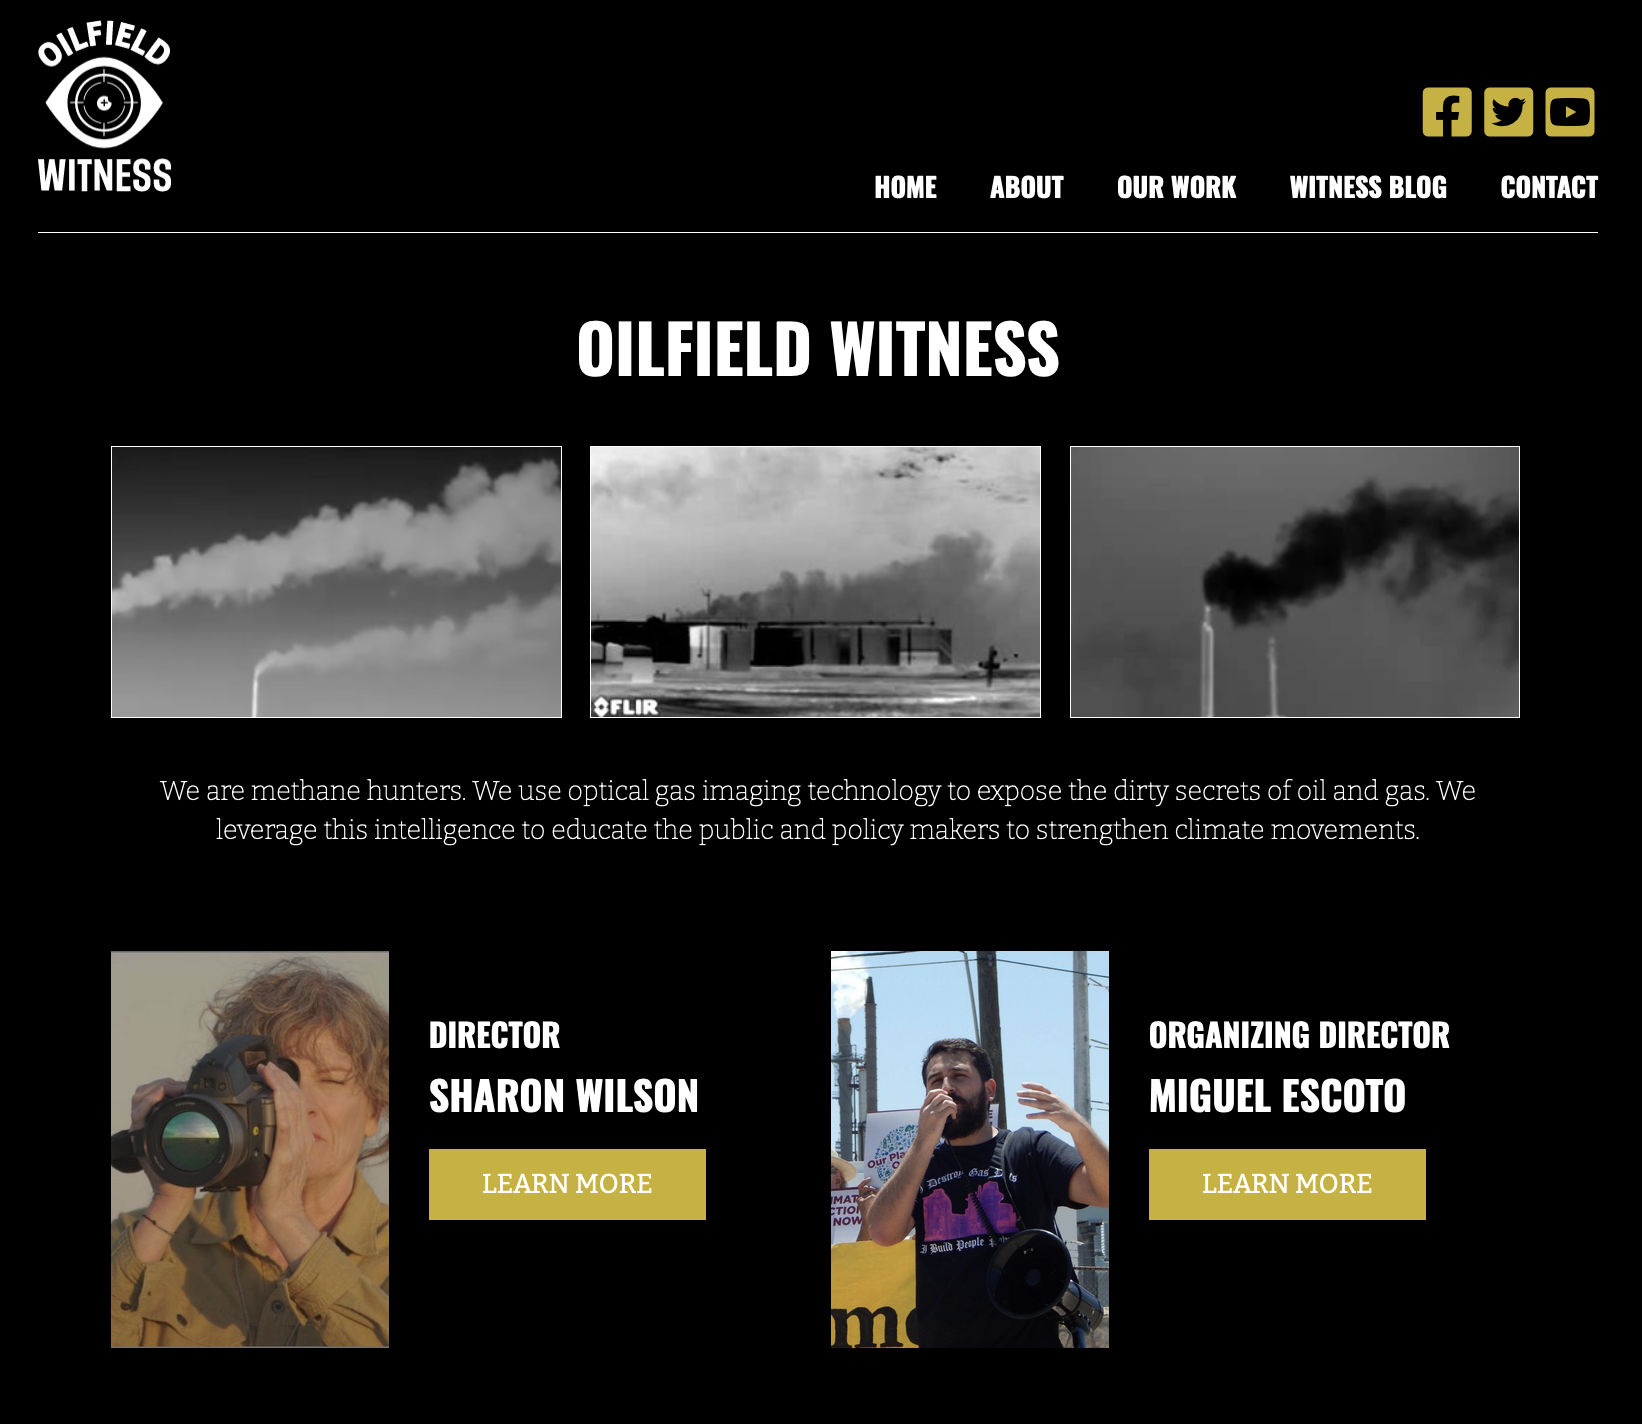 Oilfield Witness website